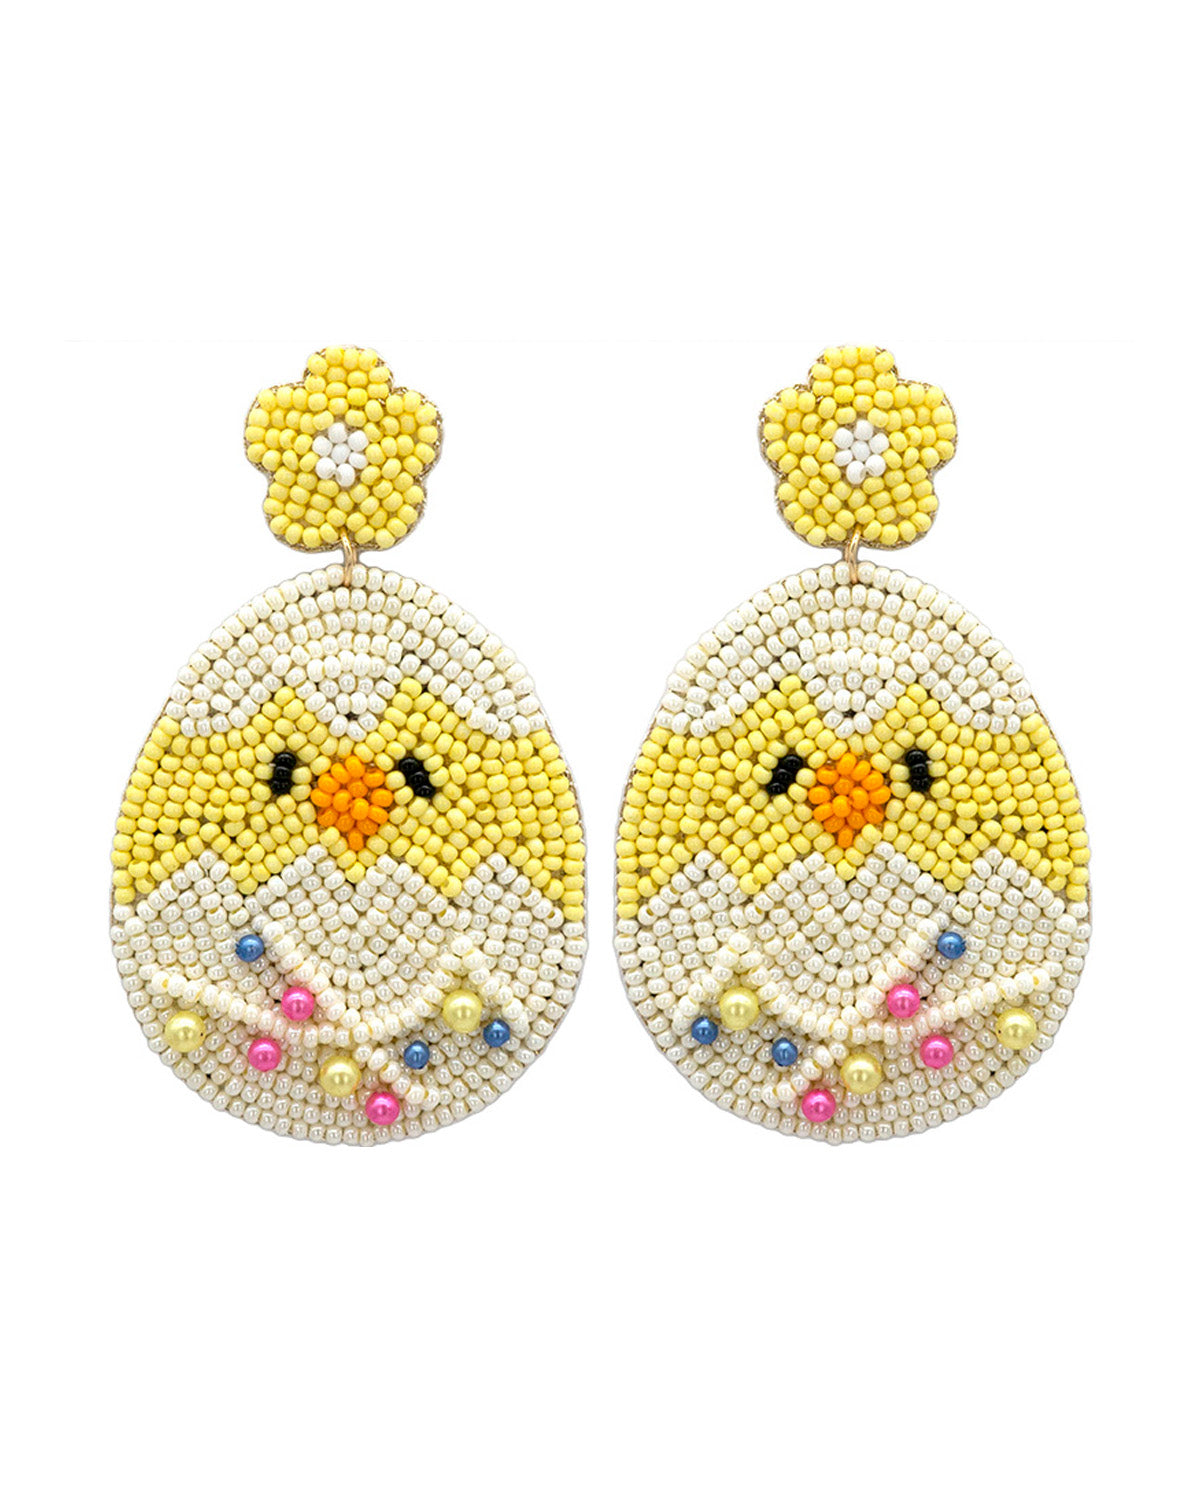 Easter Egg & Chick Earrings